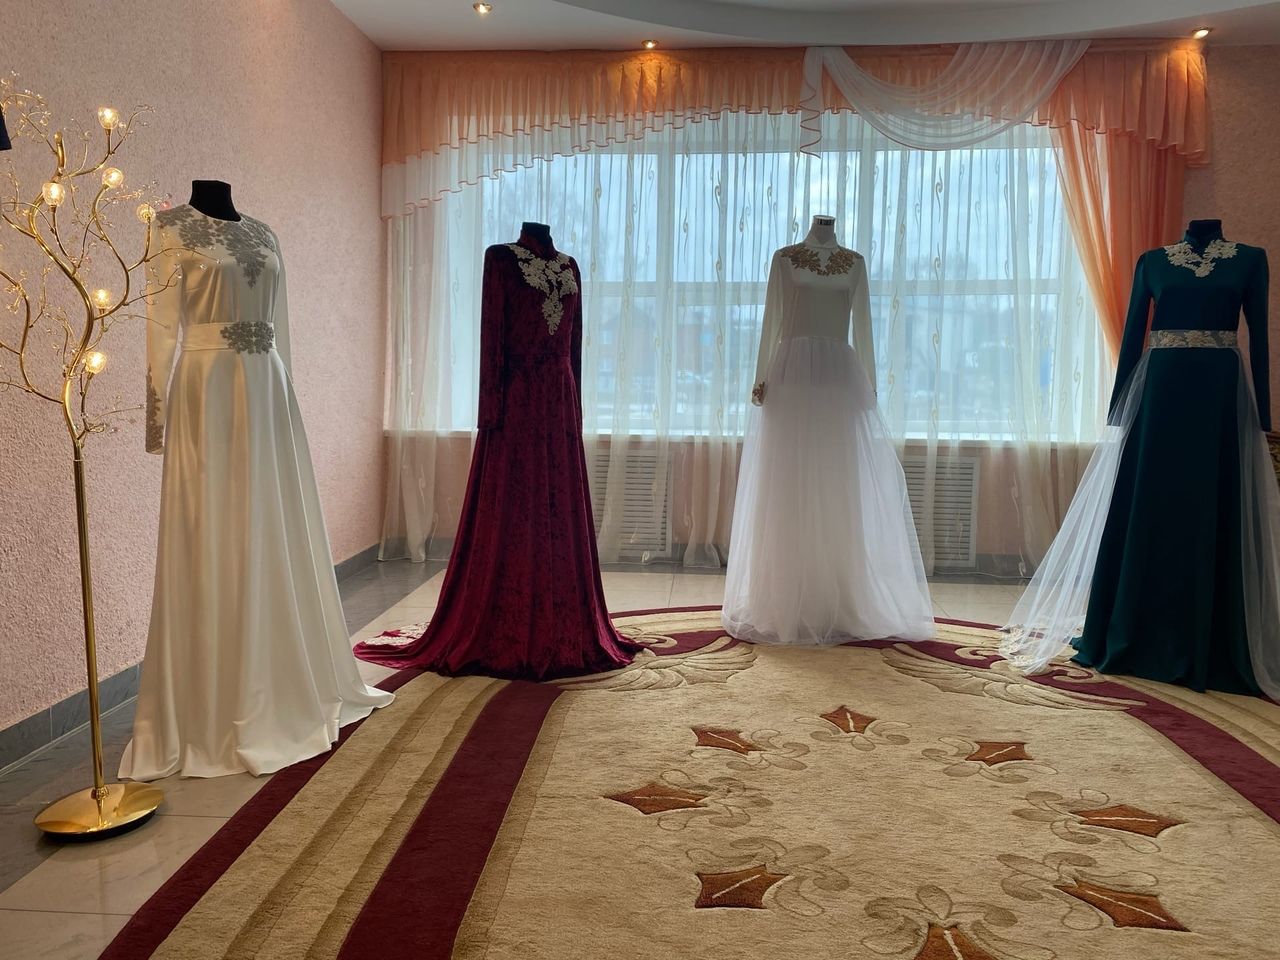 Мамадышская невеста устроила в ЗАГСе девичник по татарским традициям